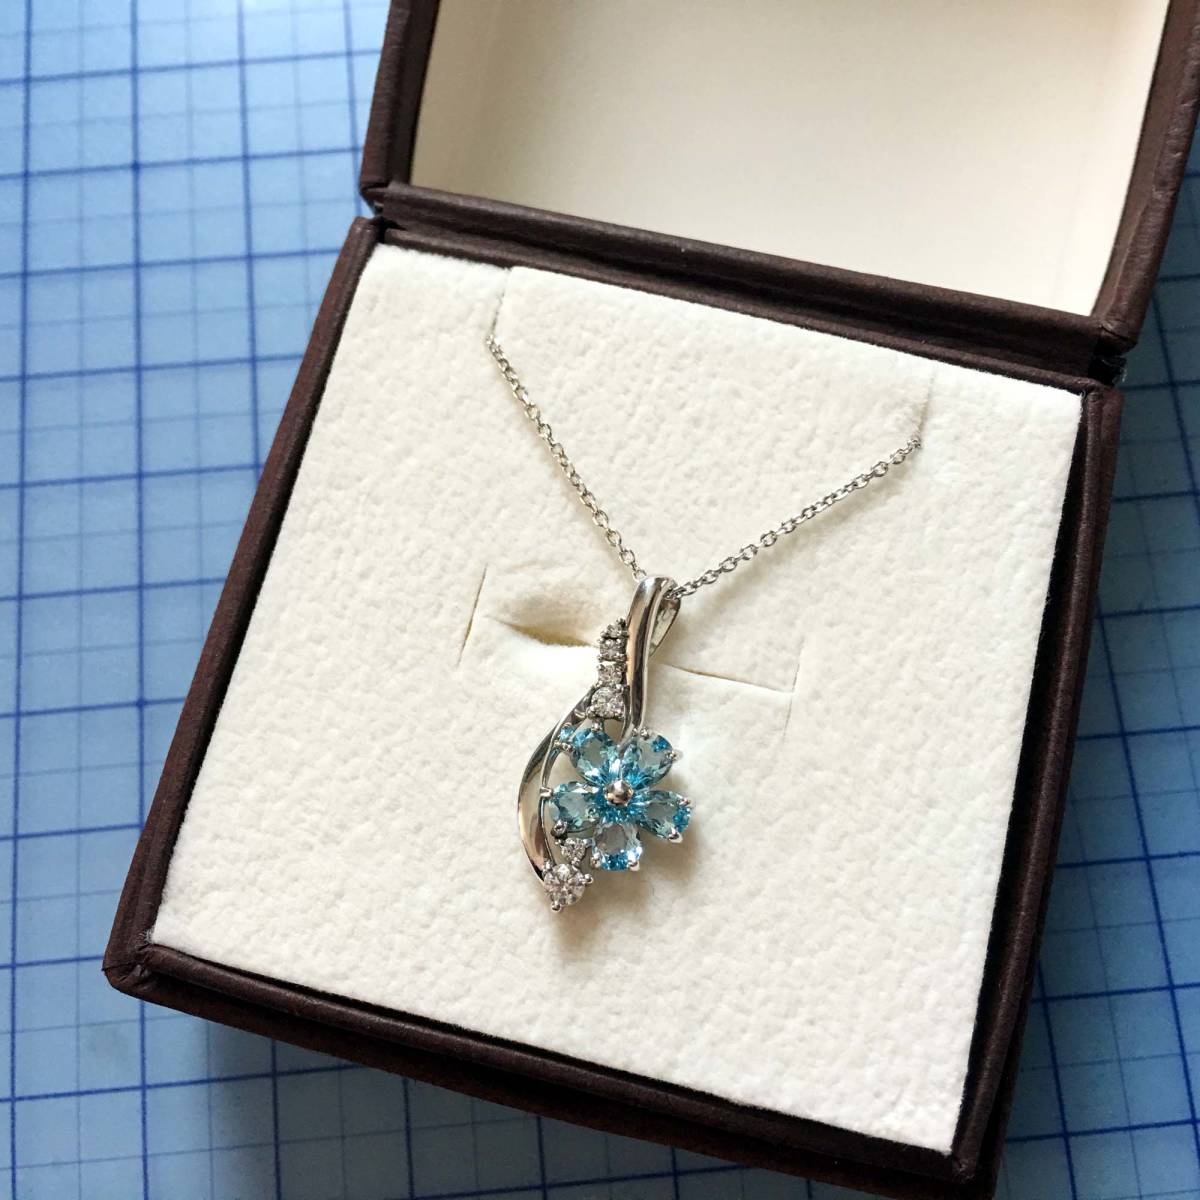 国内最大のお買い物情報 真珠 Milluflora セット ピアス ネックレス ネックレス